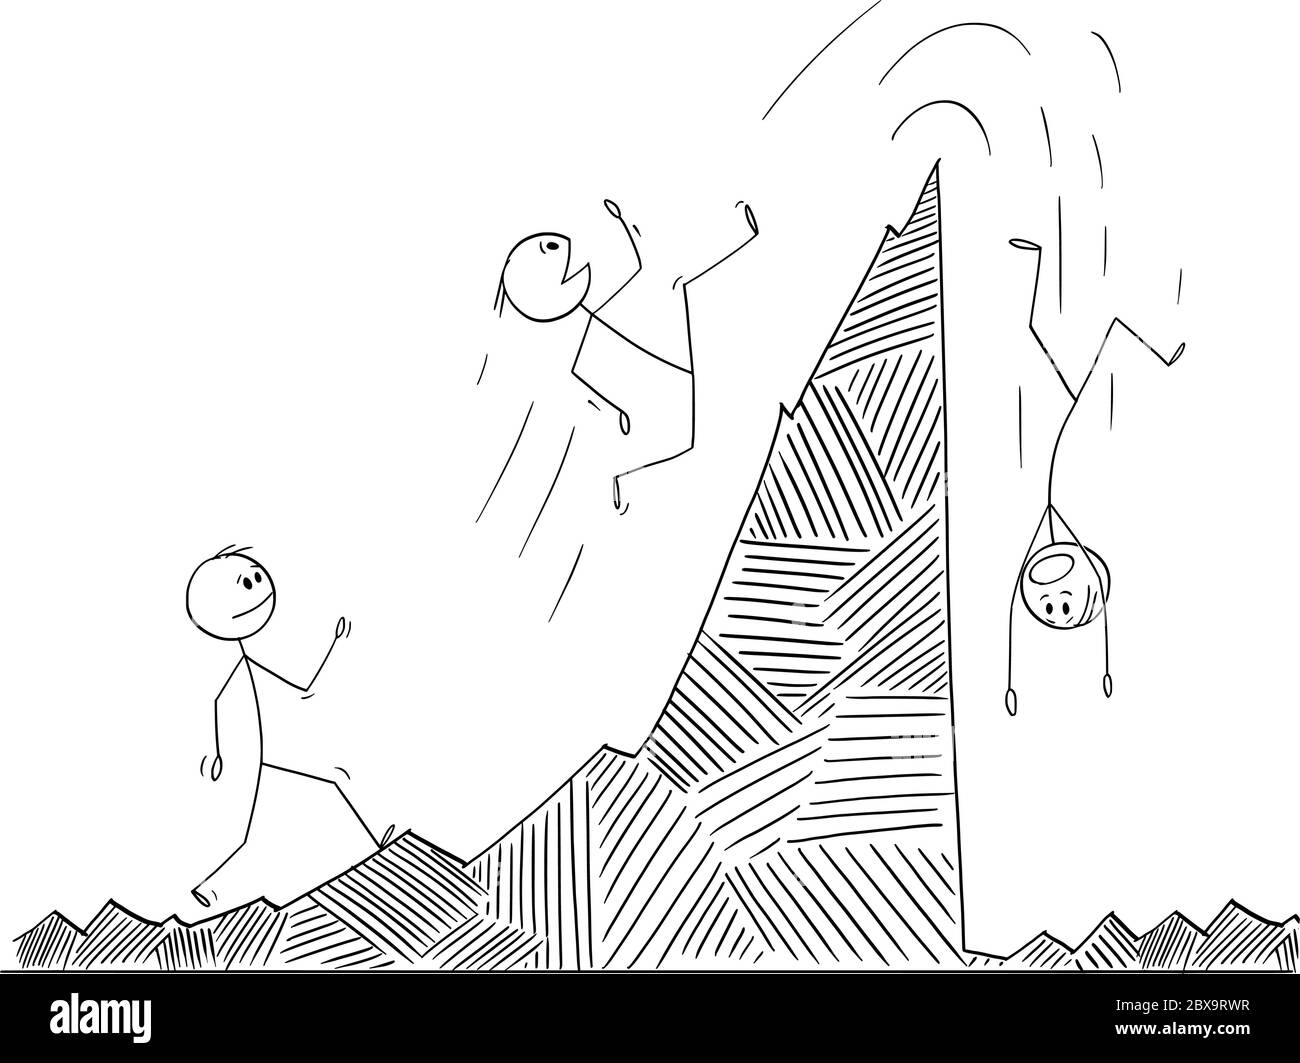 Vektor Cartoon Stick Figur Zeichnung konzeptionelle Illustration von Mann, Geschäftsmann oder Aktieninvestor zu Fuß und fallen auf der Finanzgrafik. Konzept des Marktzyklus. Stock Vektor